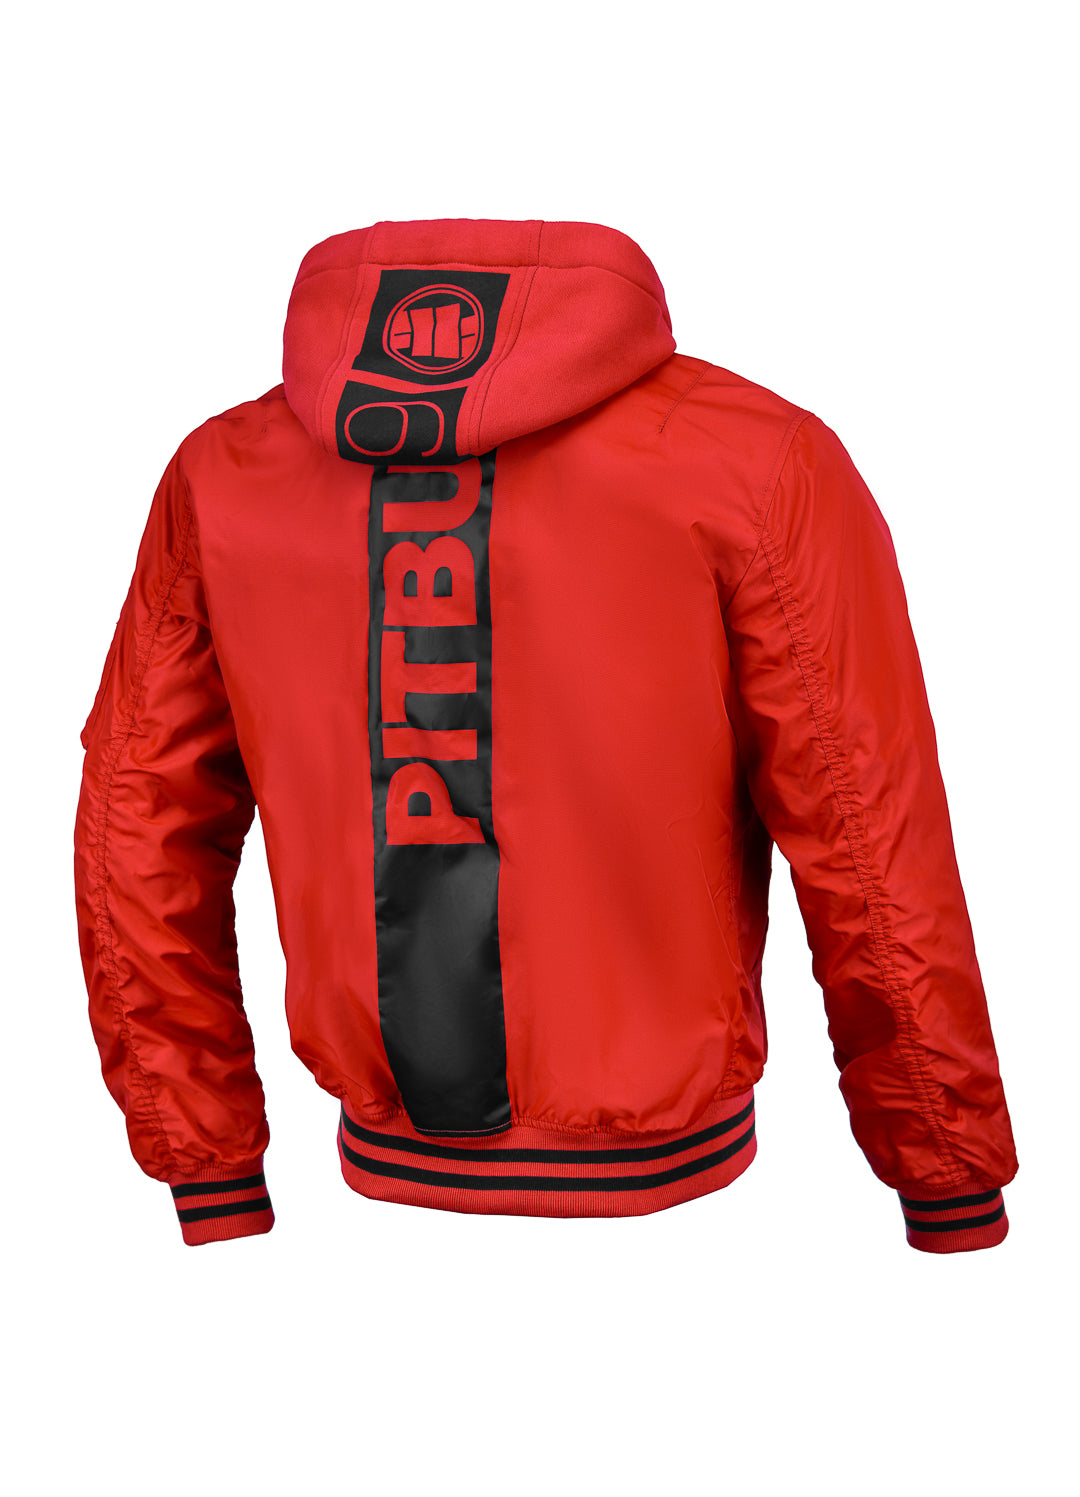 Jacket NIMITZ Flame Red - Pitbull West Coast International Store 